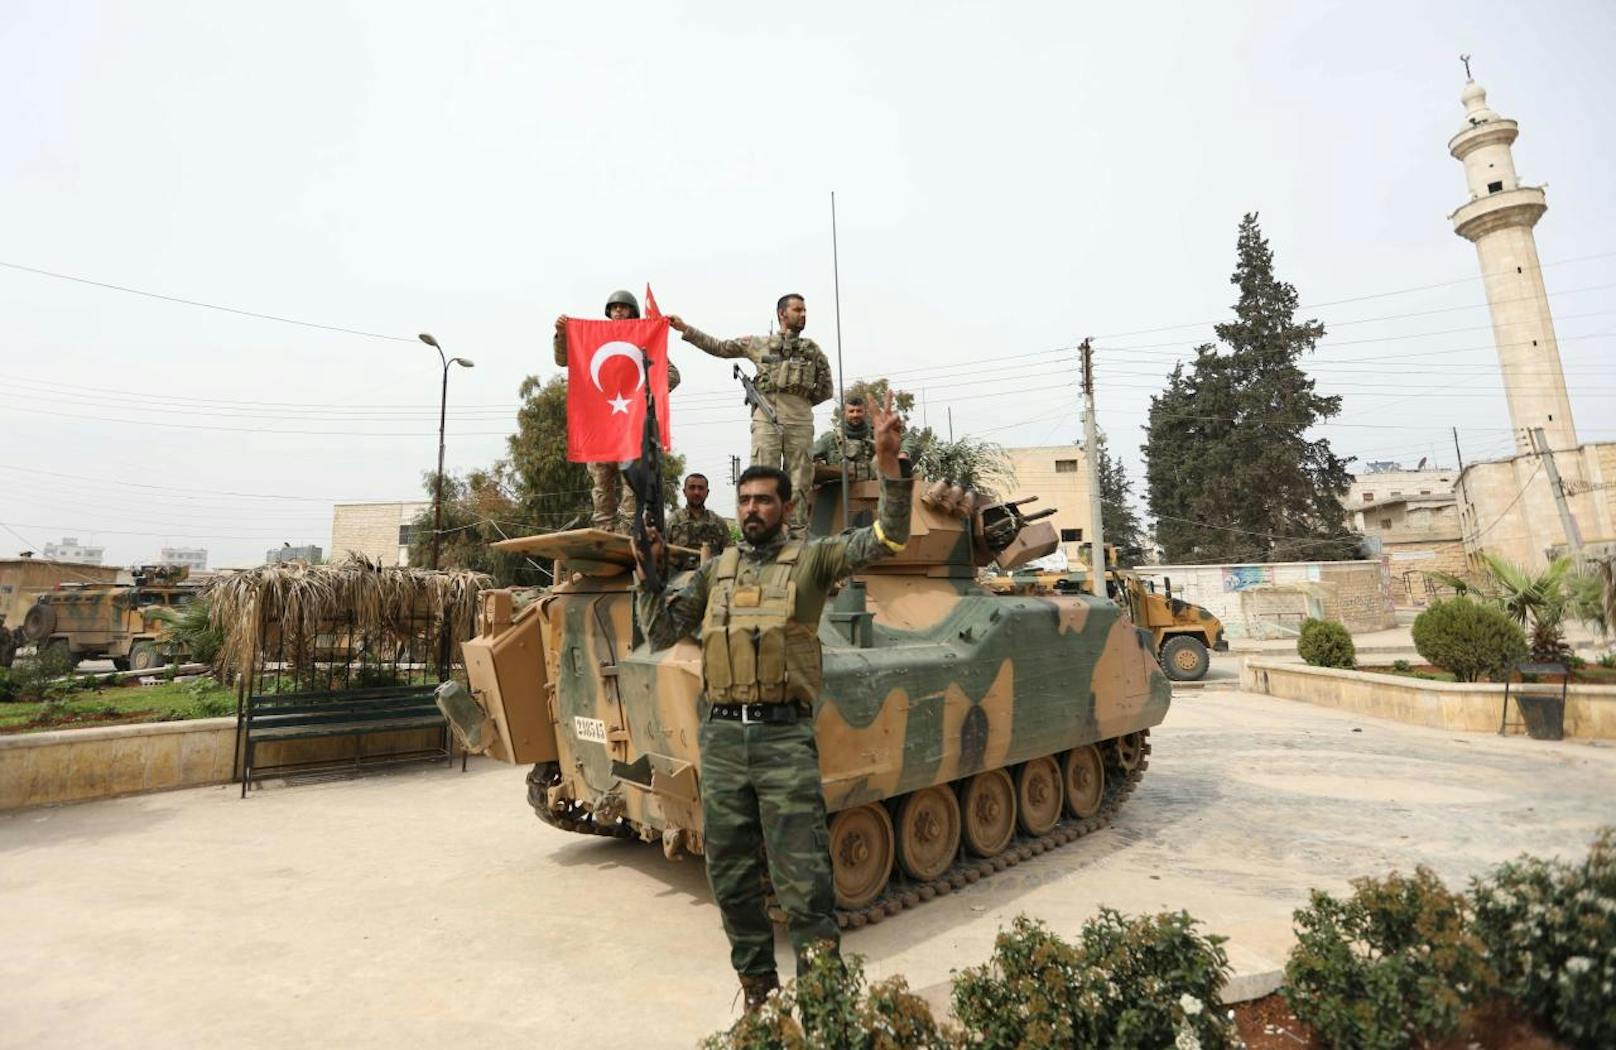 Rund zwei Monate nach Beginn der türkischen Offensive in Nordsyrien haben die türkischen Truppen und ihre Verbündeten am Sonntag (18. März) die mehrheitlich kurdische Stadt Afrin eingenommen.